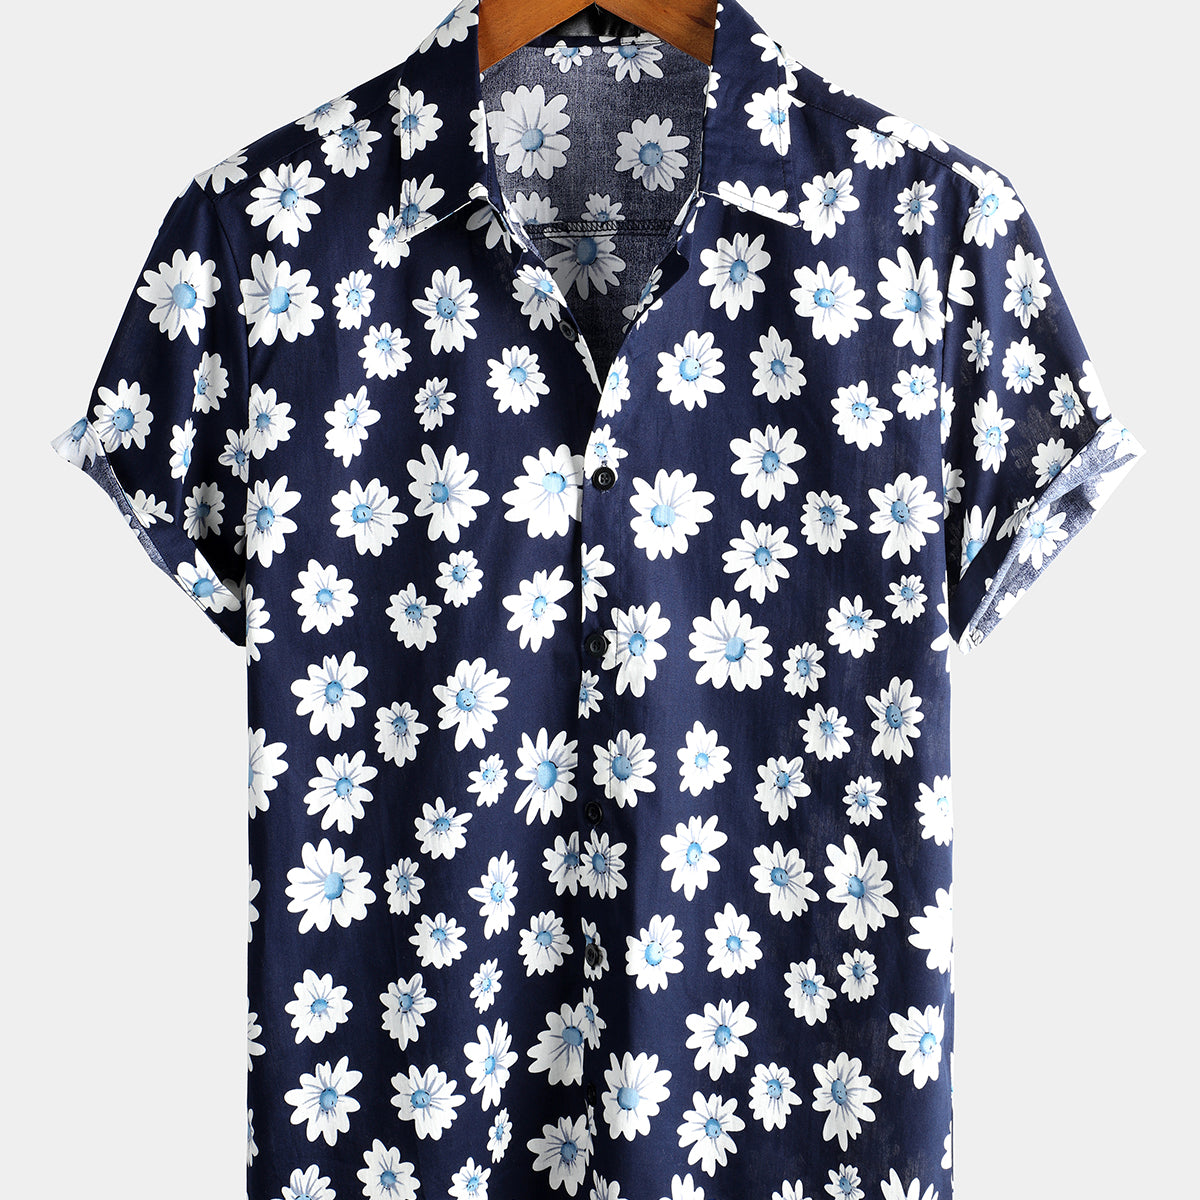 Men's Black Daisy Hawaiian Short Sleeve Shirt